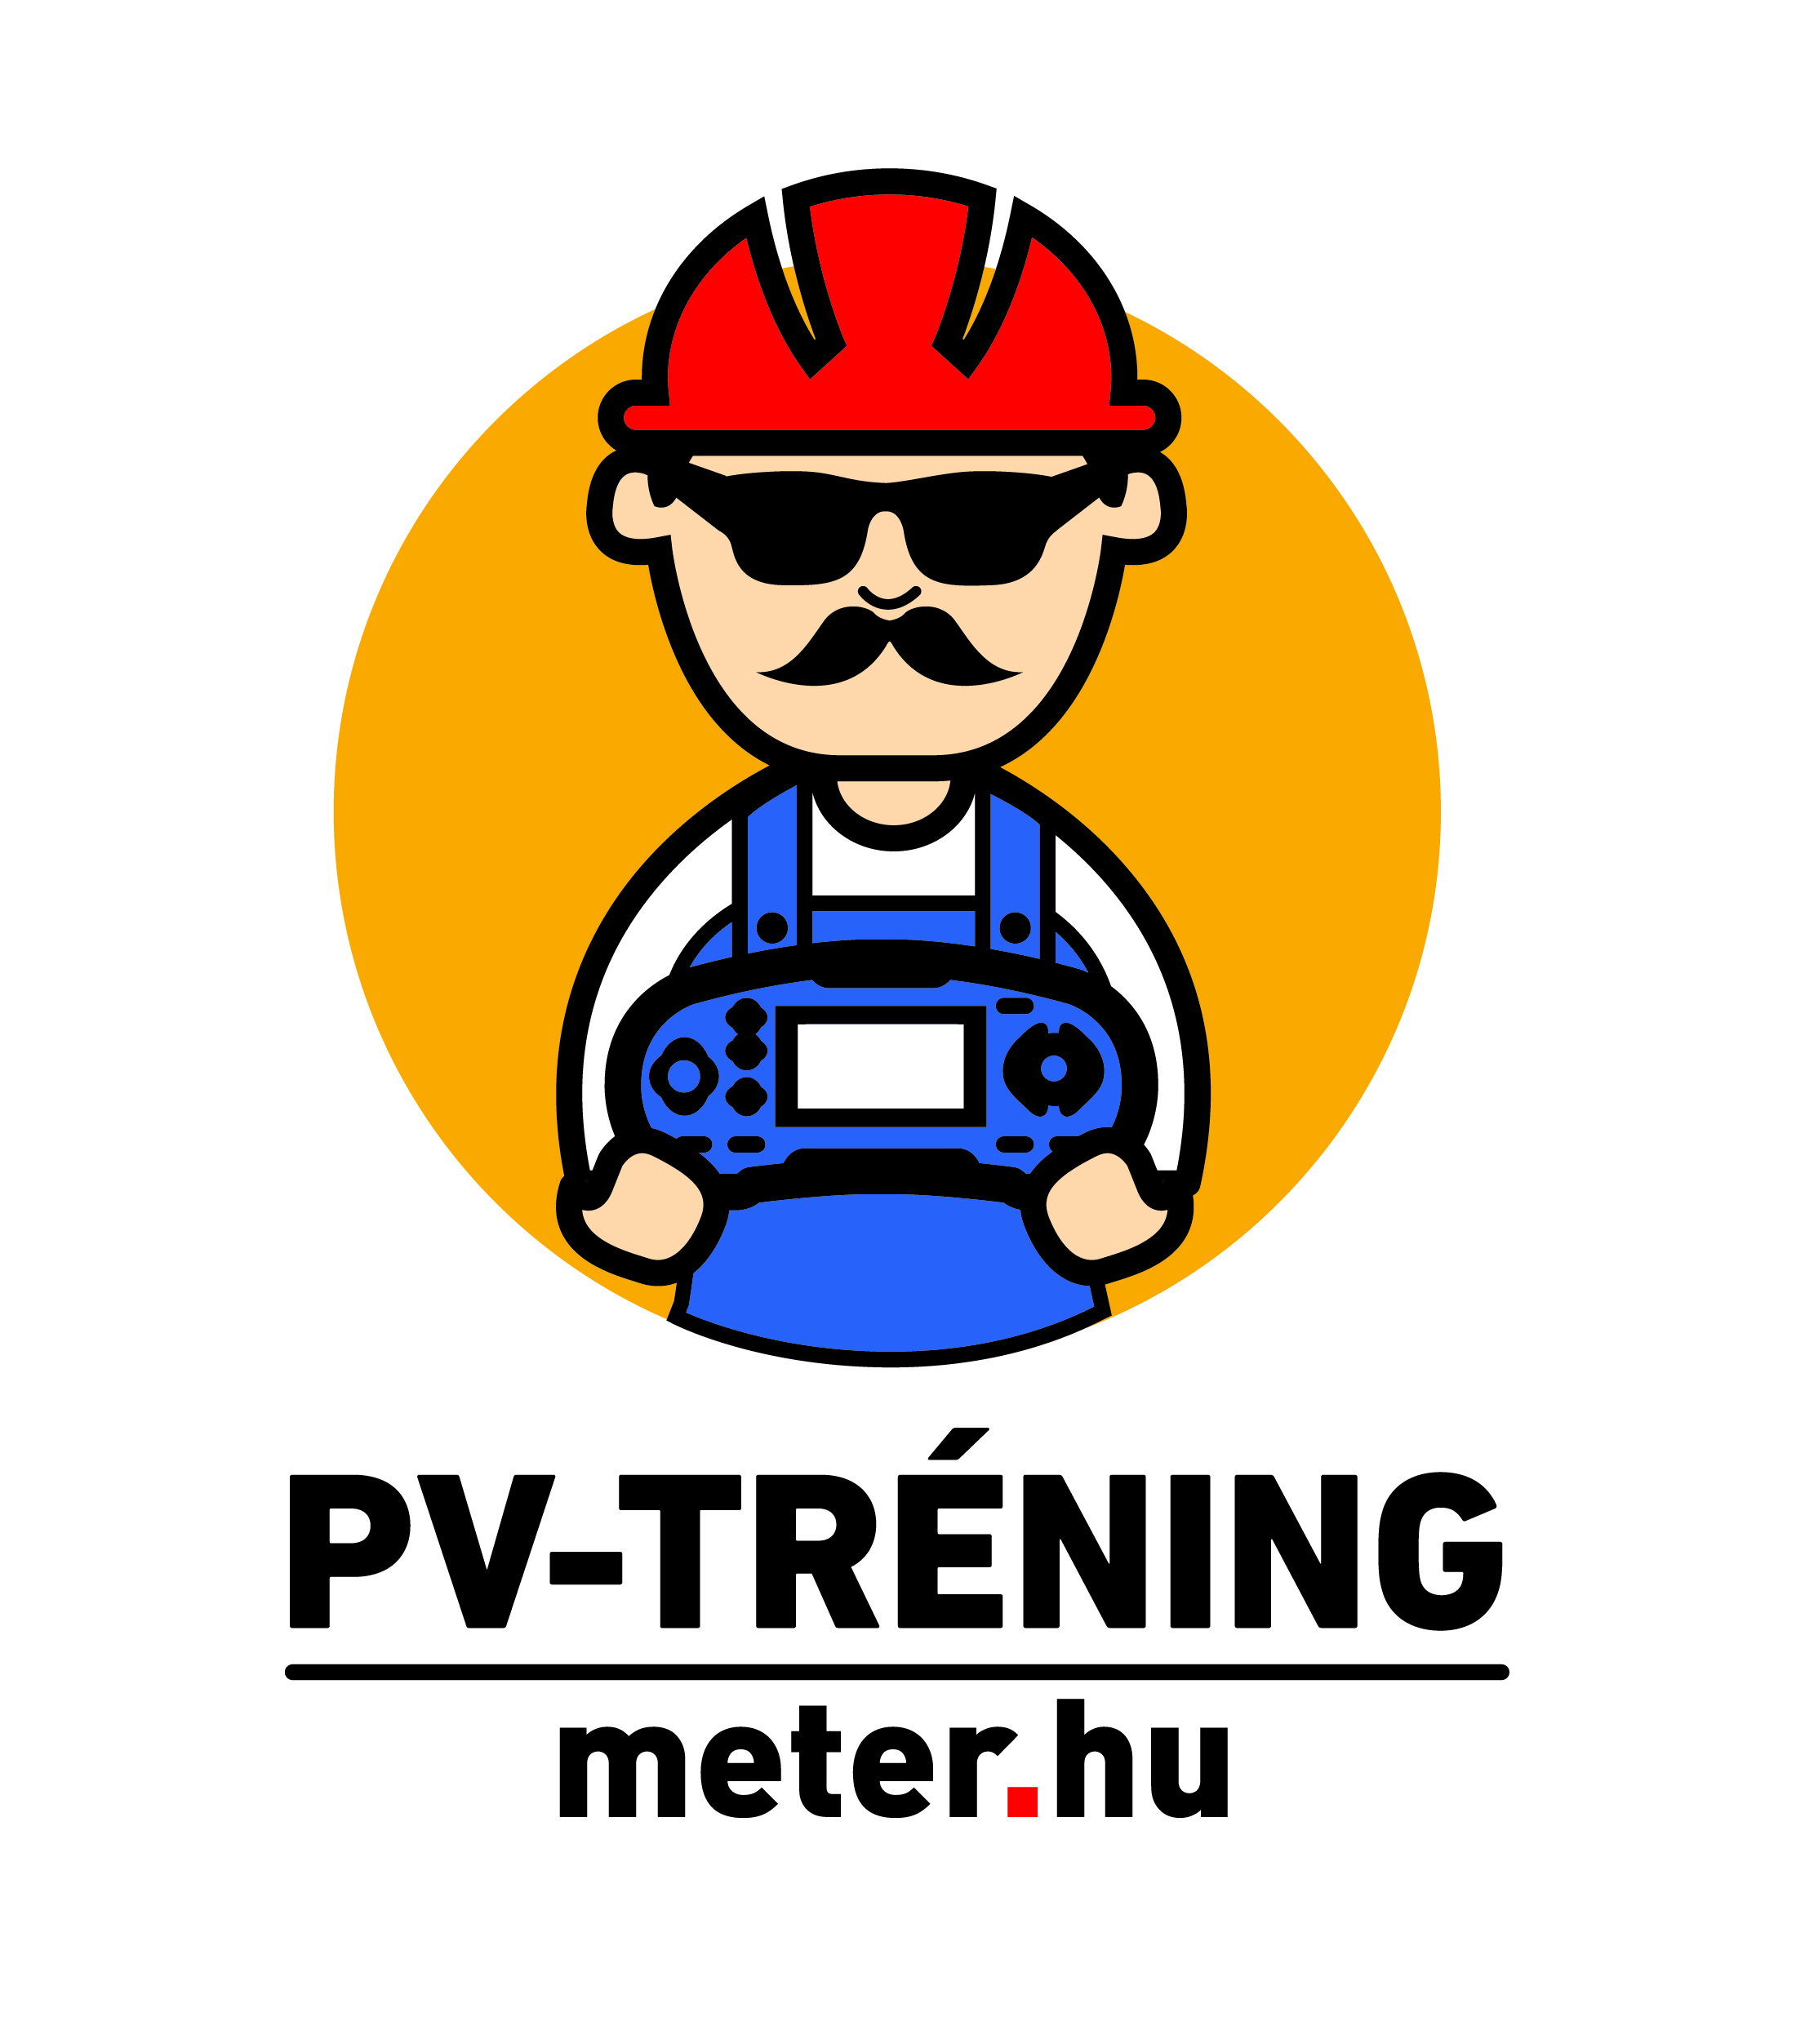 PV-tréning